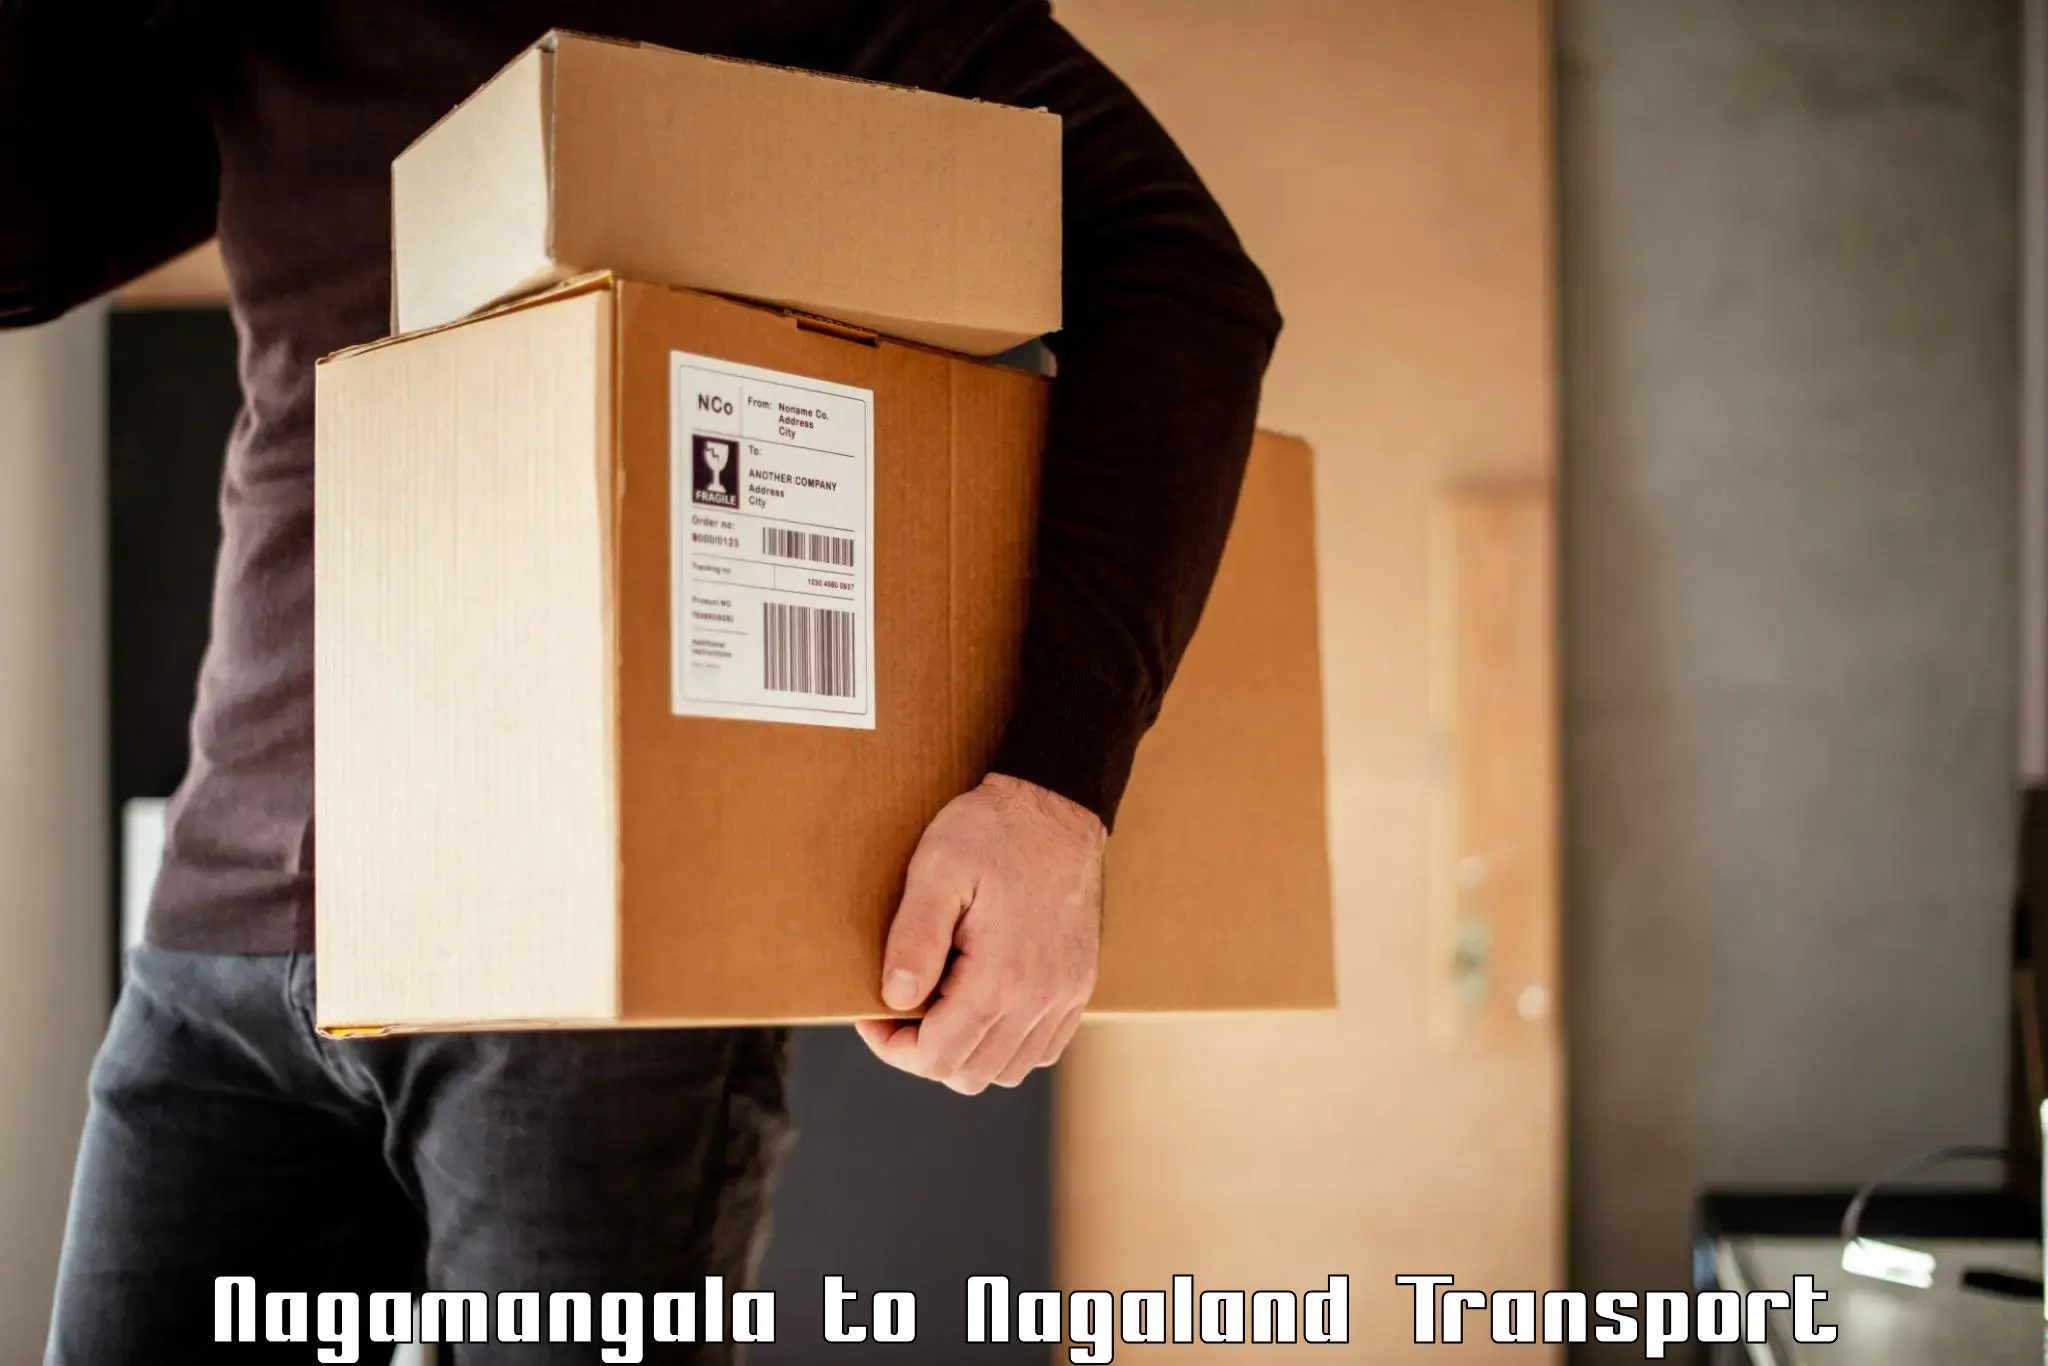 Shipping partner Nagamangala to NIT Nagaland